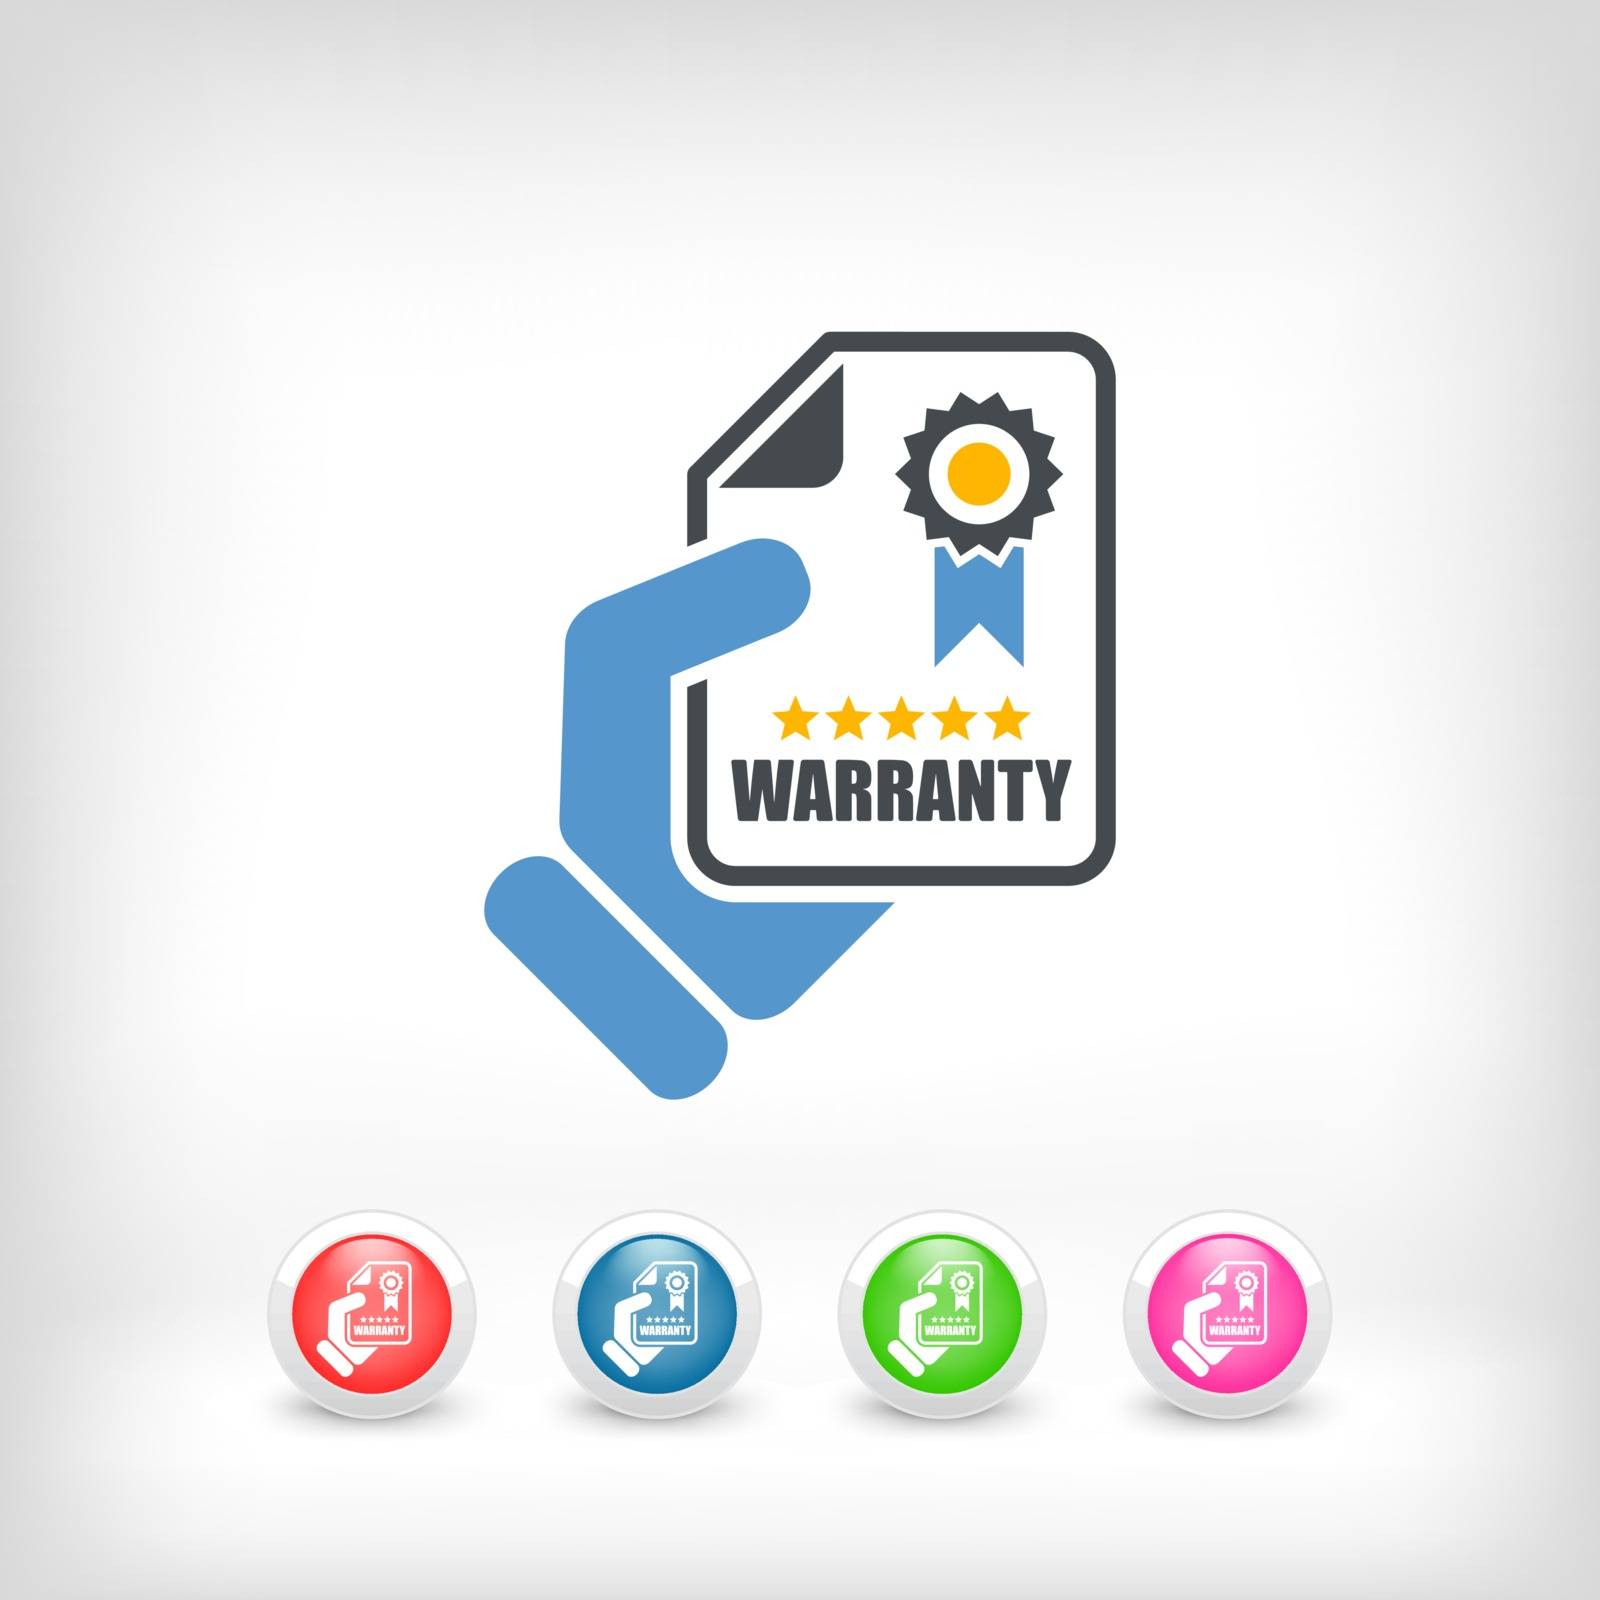 Warranty icon by myVector